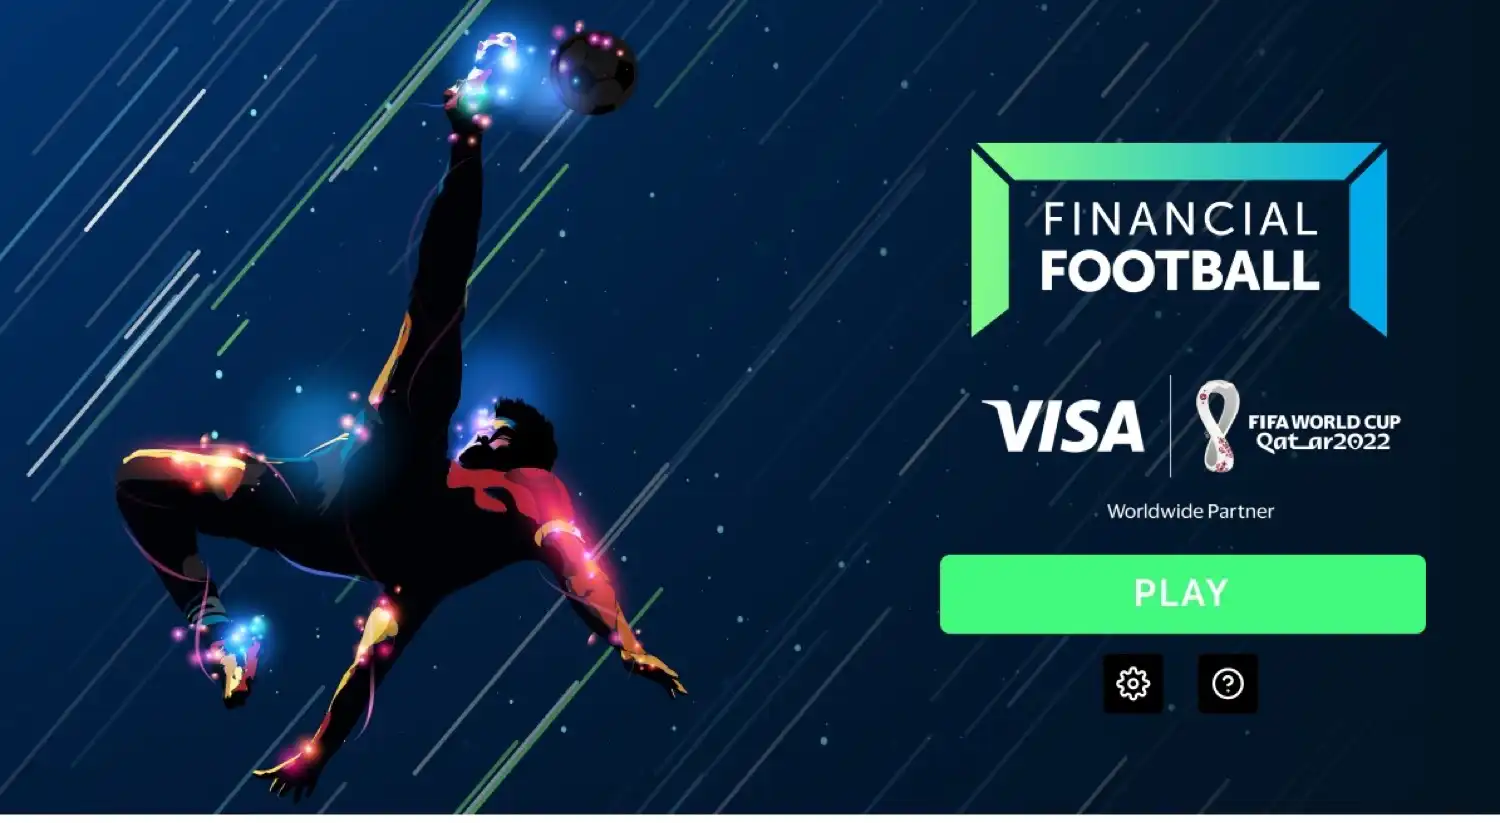 Visa apunta a las metas financieras con nuevo videojuego de fútbol